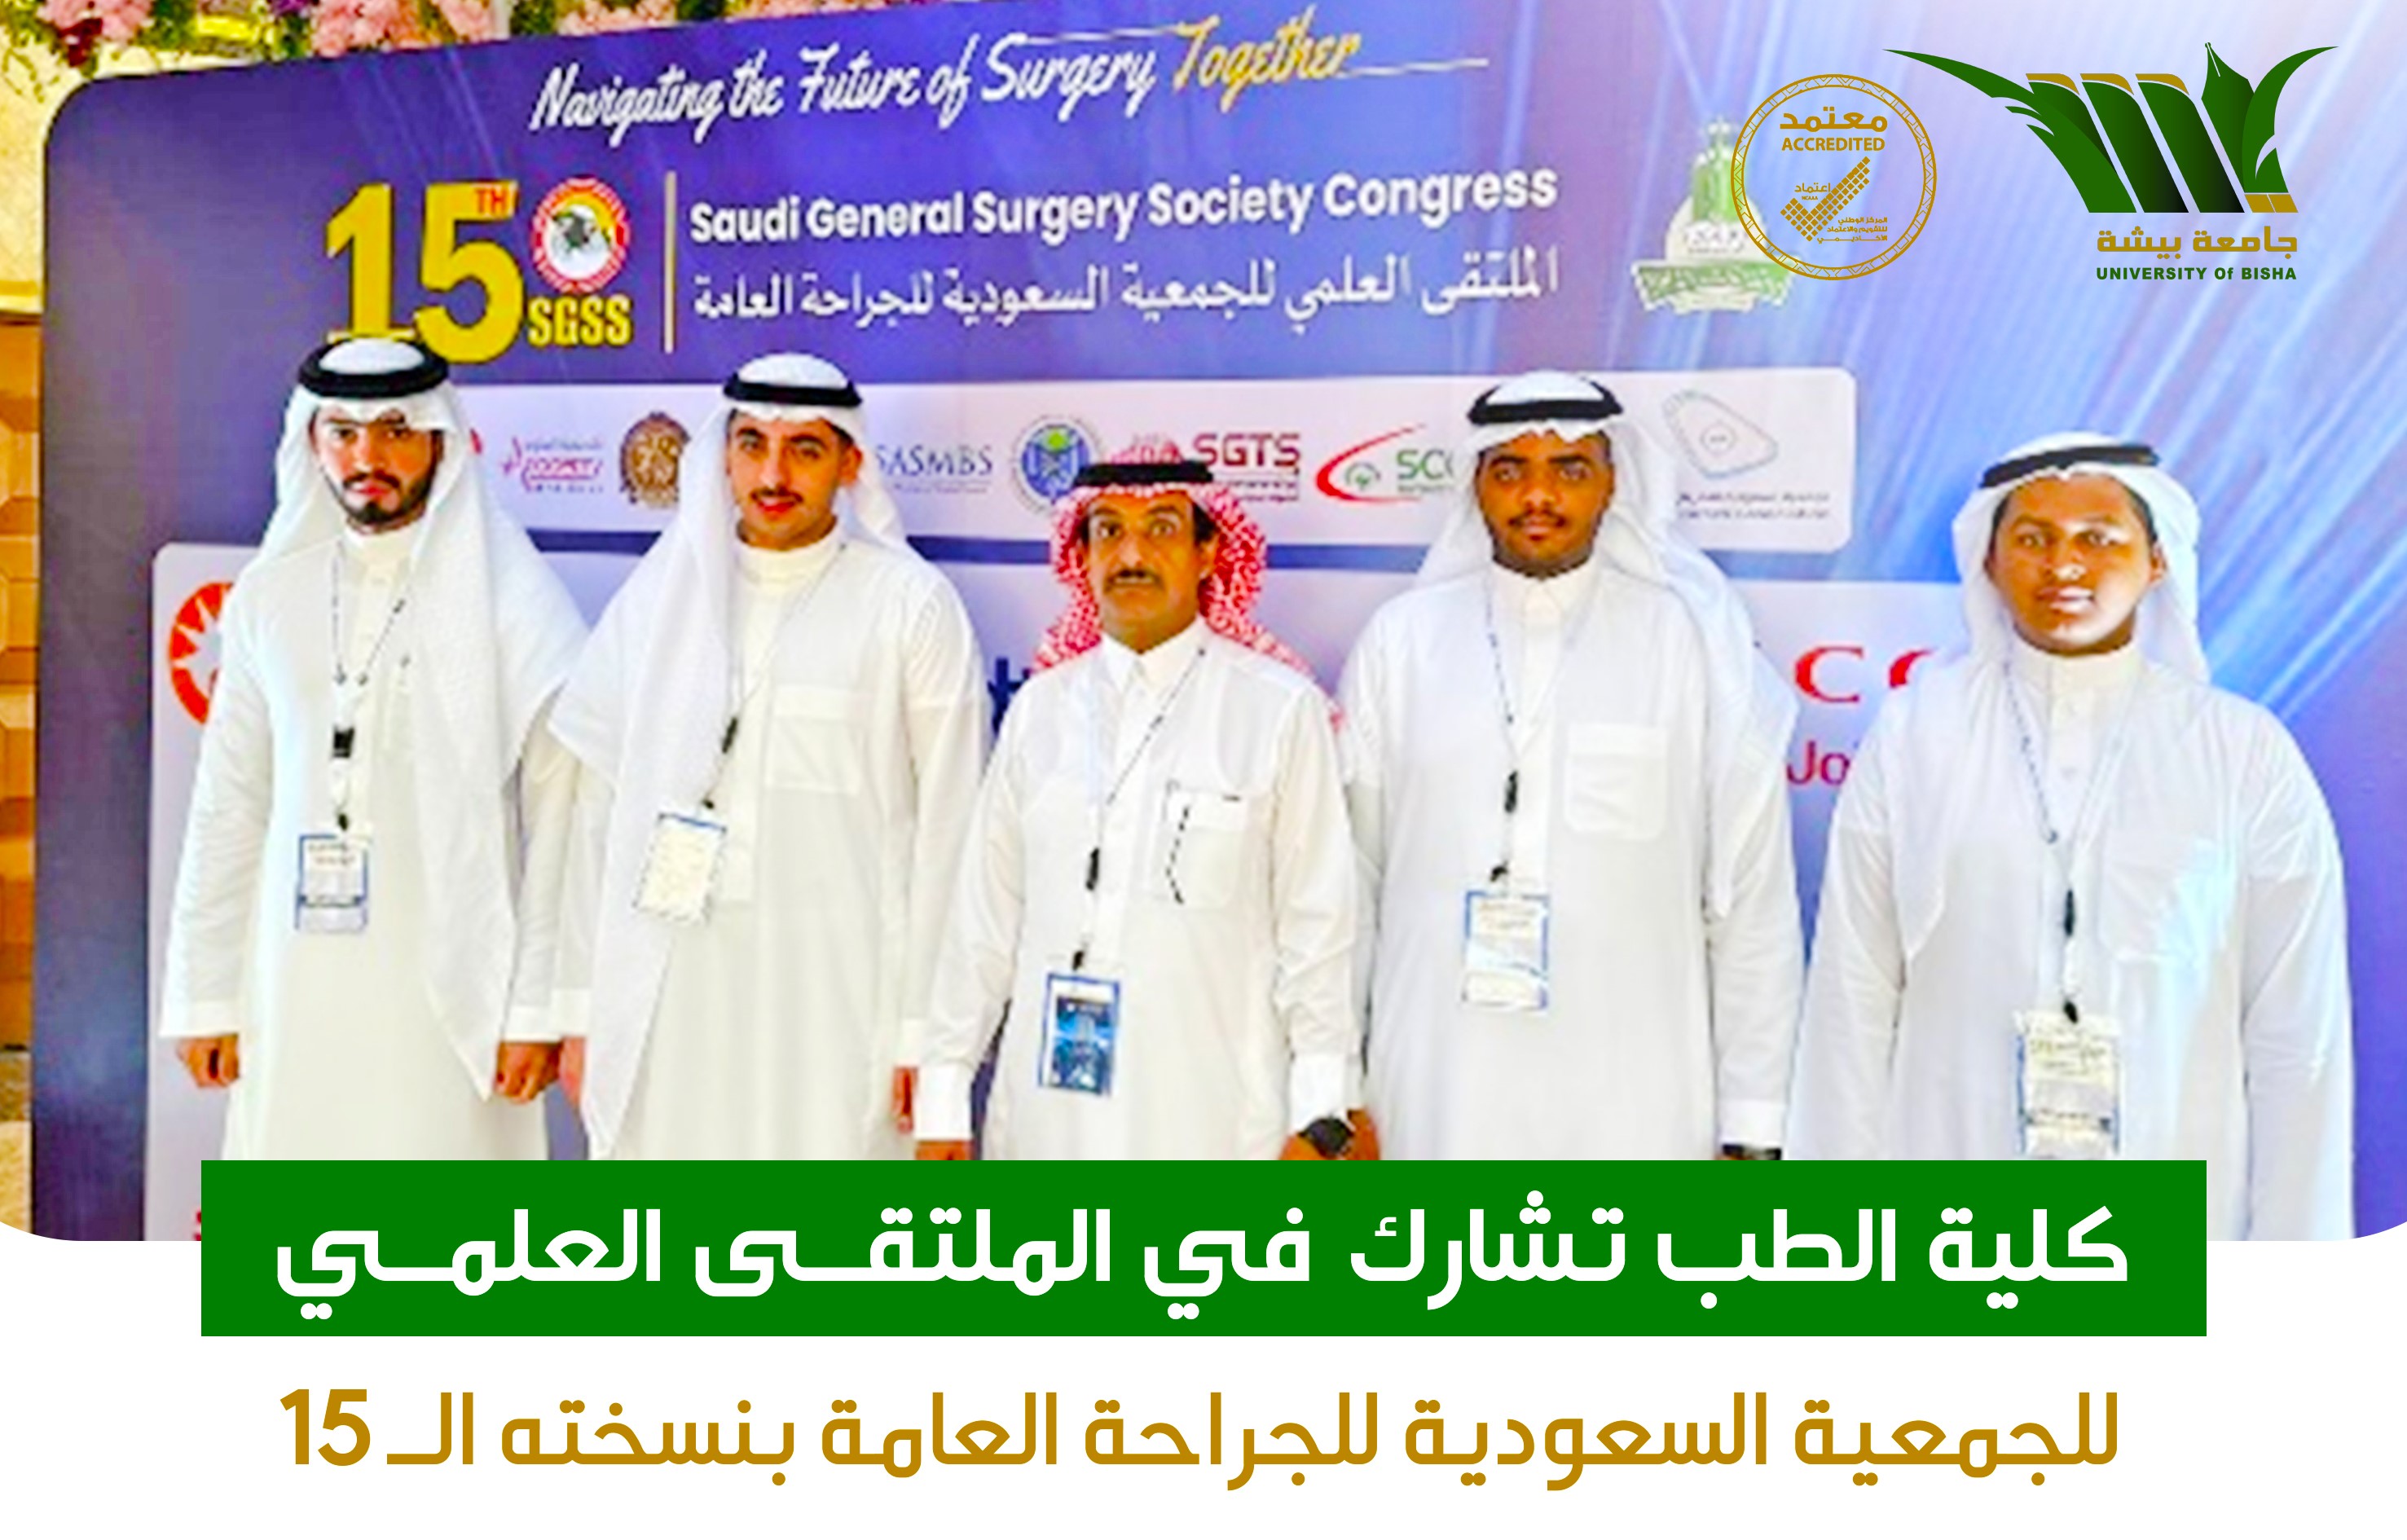 كلية الطب تشارك في الملتقى العلمي للجمعية السعودية للجراحة العامة بنسخته الـ 15